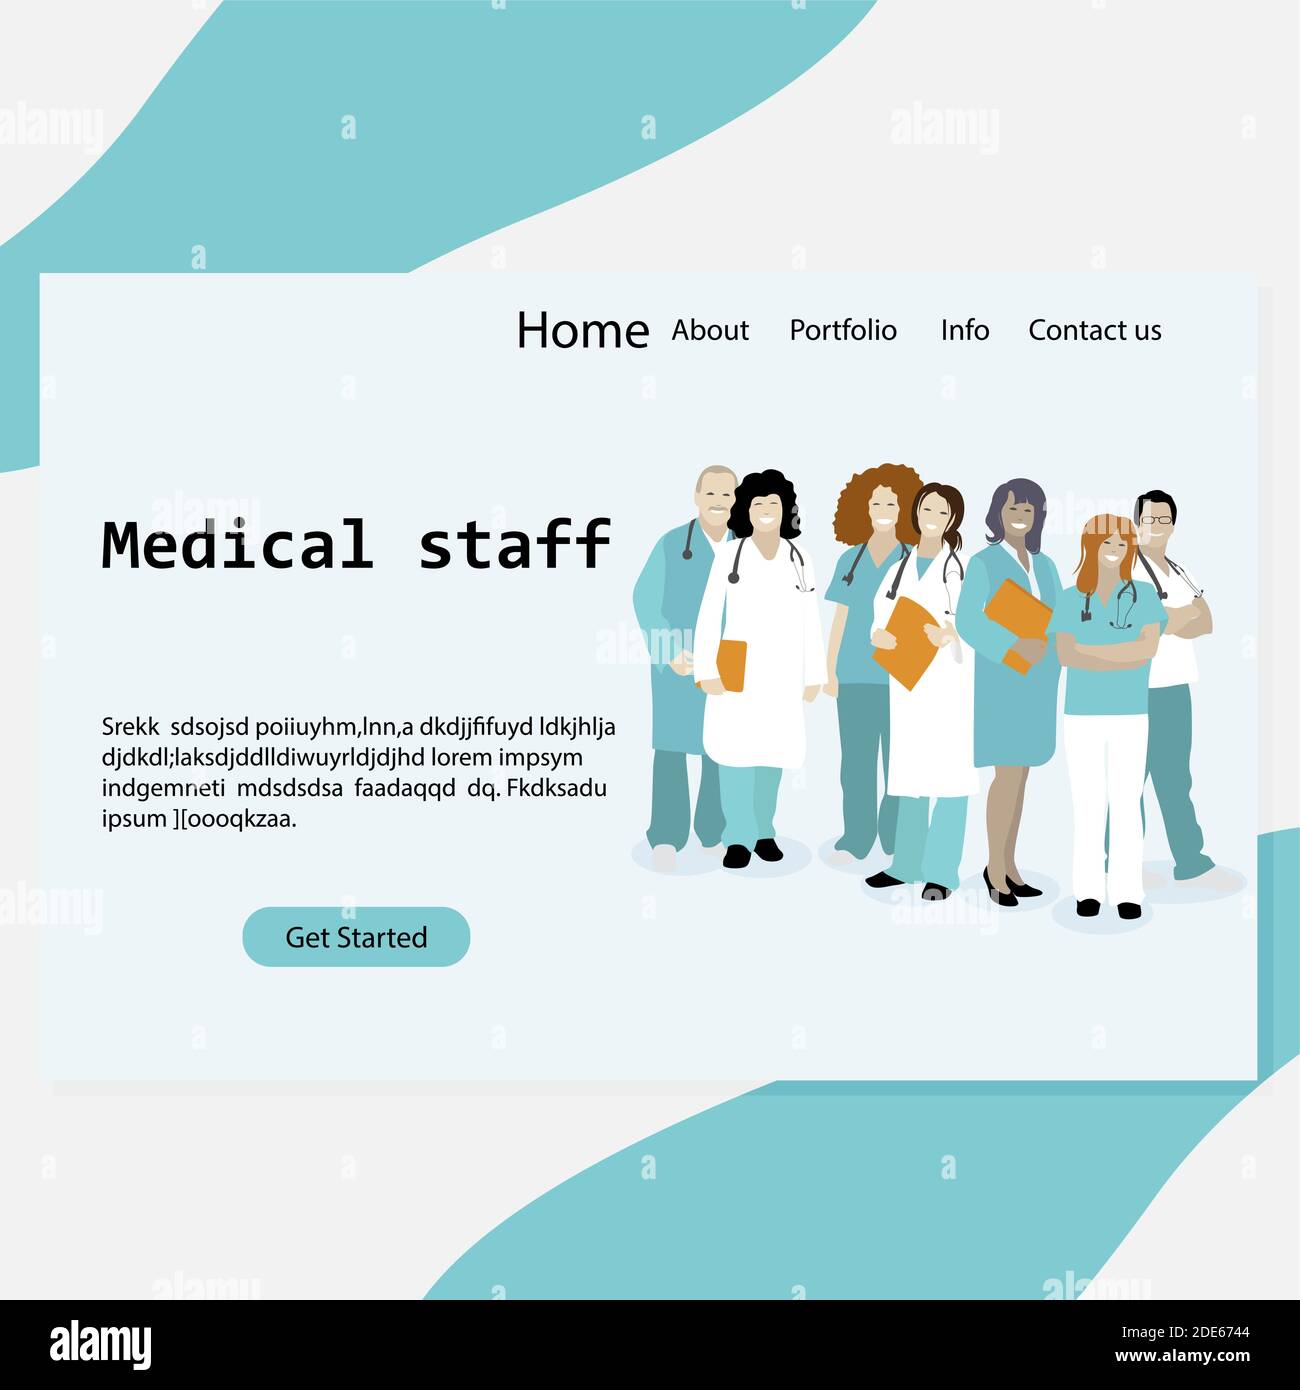 Startseite medizinisches Personal, Klinik oder Krankenhaus Homepage. Arzt und Krankenschwester, Arzt und Zahnarzt, Website Gesundheitswesen. Vektorgrafik Stock Vektor